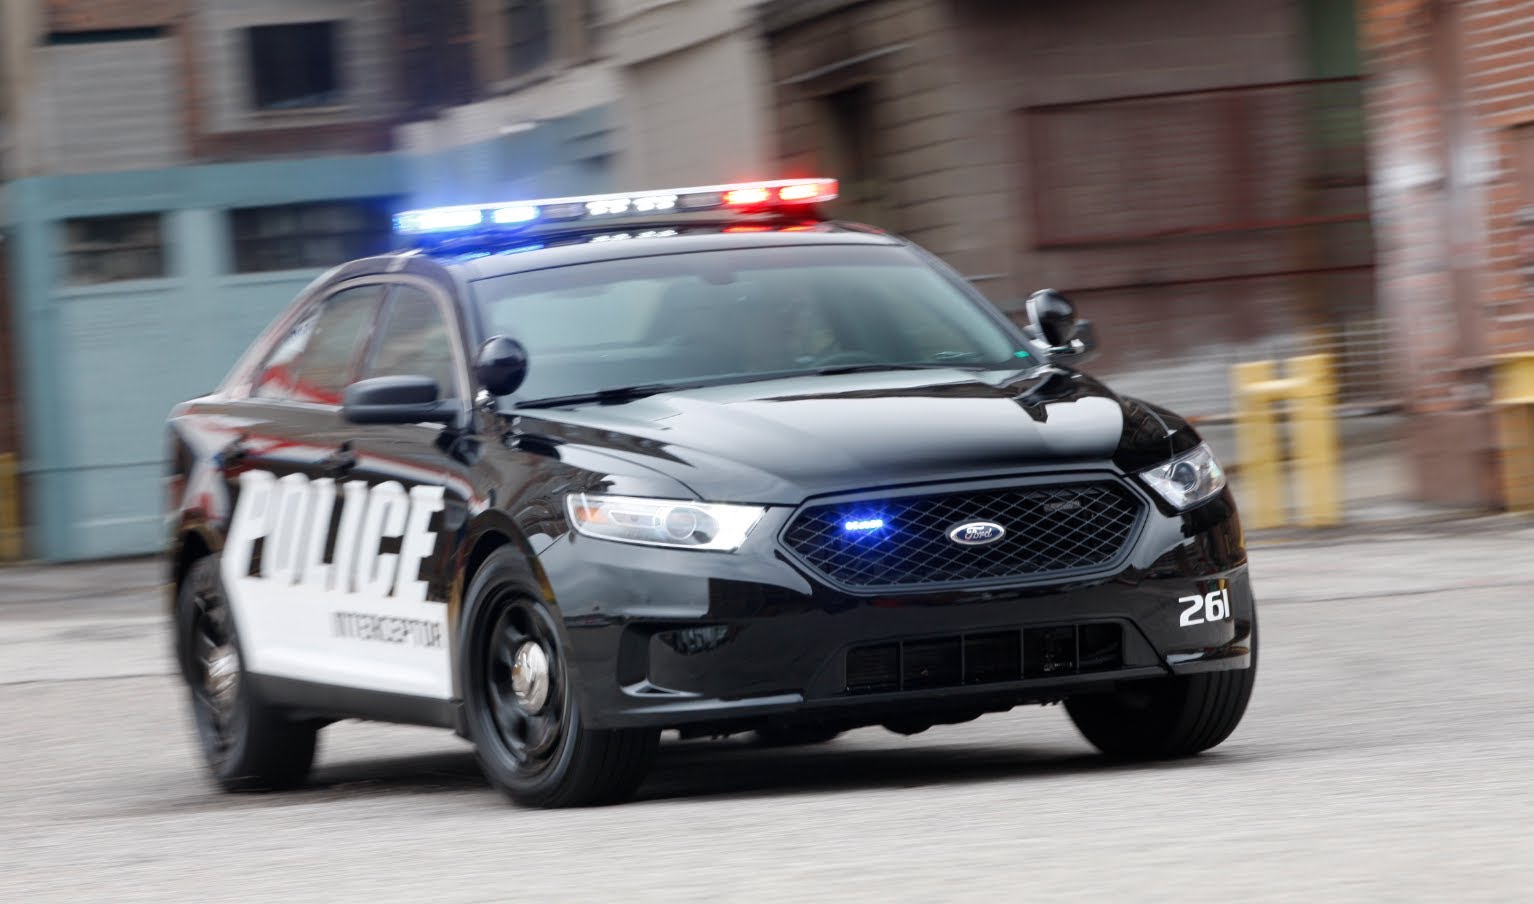 Полицейская машина догоняет машину. Ford Police Interceptor. Ford Police Interceptor 2014. Ford Police Interceptor 1980. Dodge Charger Police Interceptor.